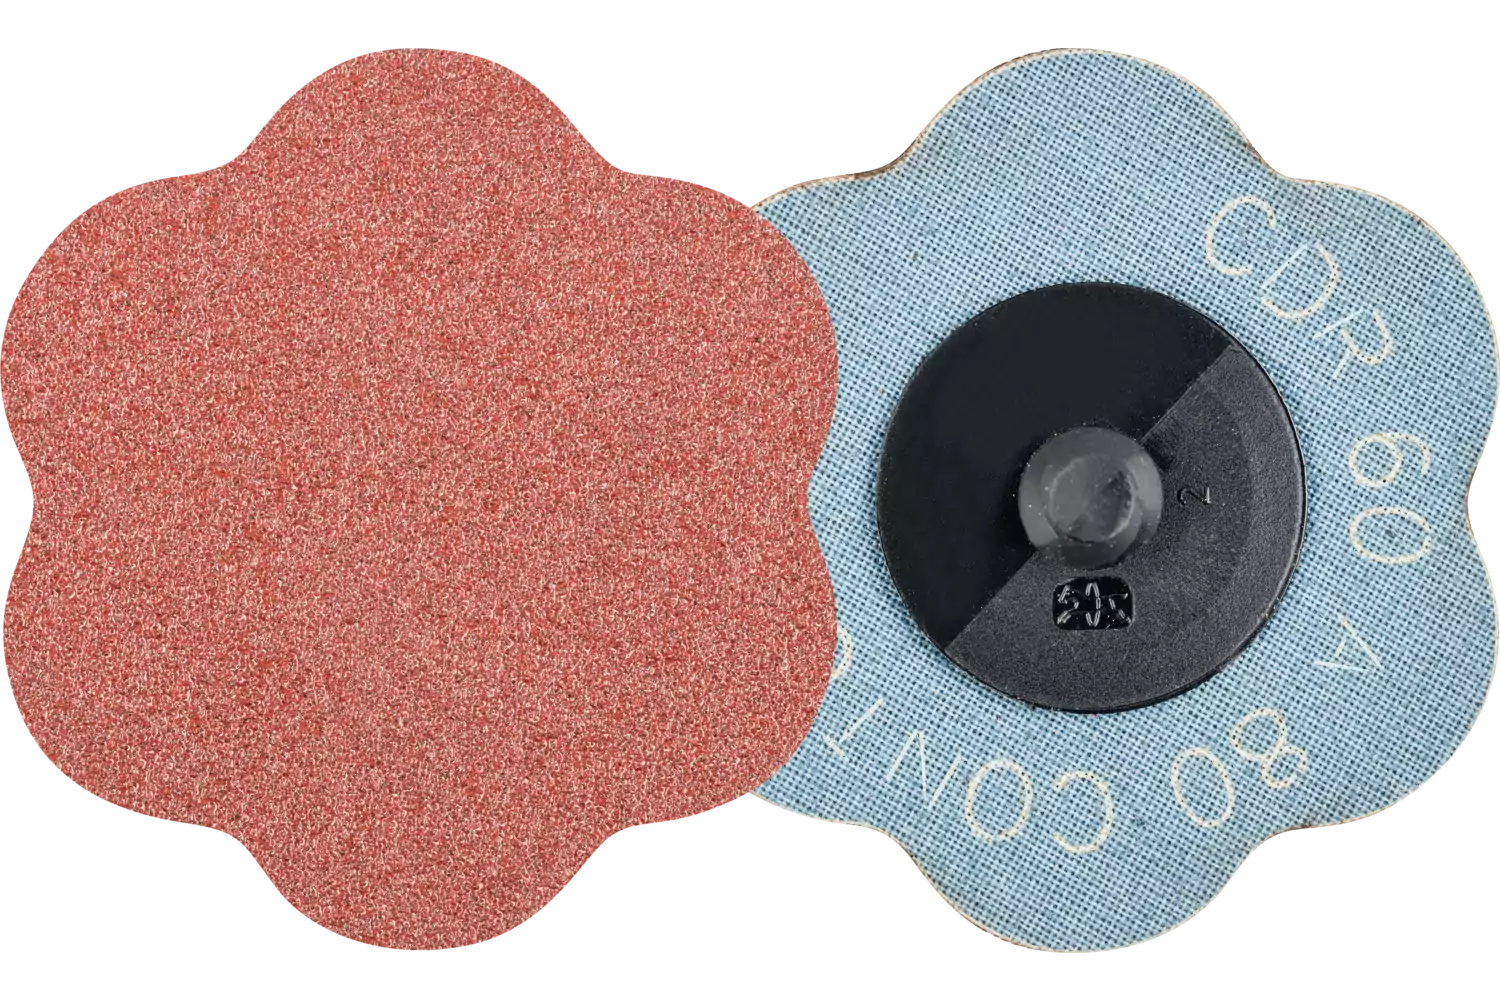 COMBIDISC aluminium oxide abrasive disc CDR dia. 60mm A80 CONTOUR for contours 1